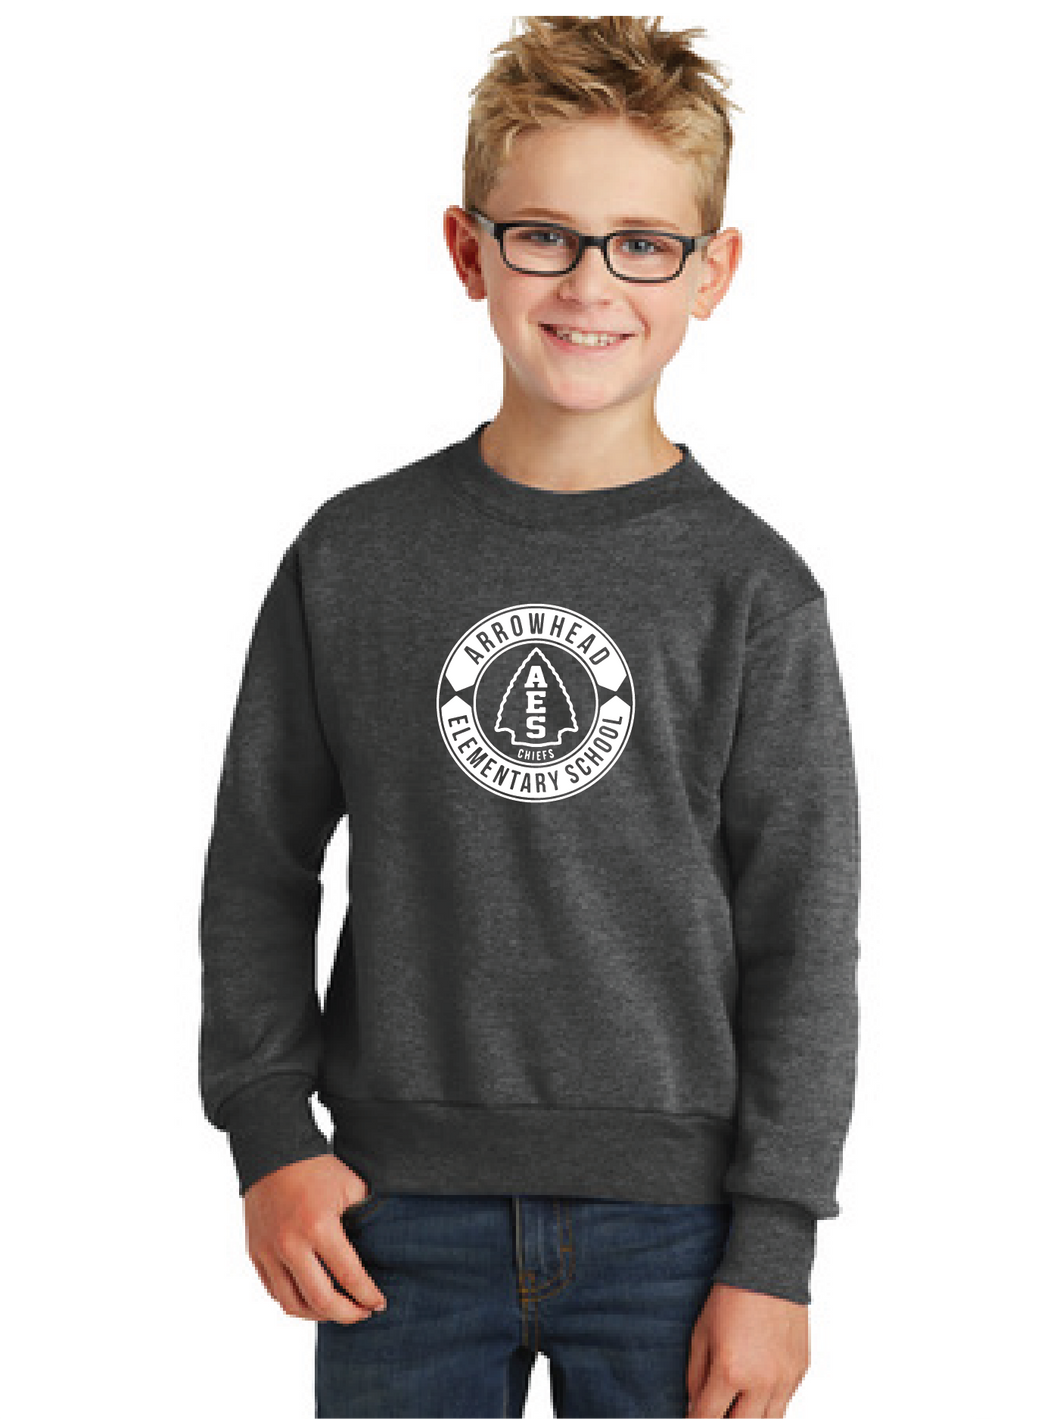 Fleece Crewneck Sweatshirt (Youth & Adult) / Charcoal / Arrowhead Elementary